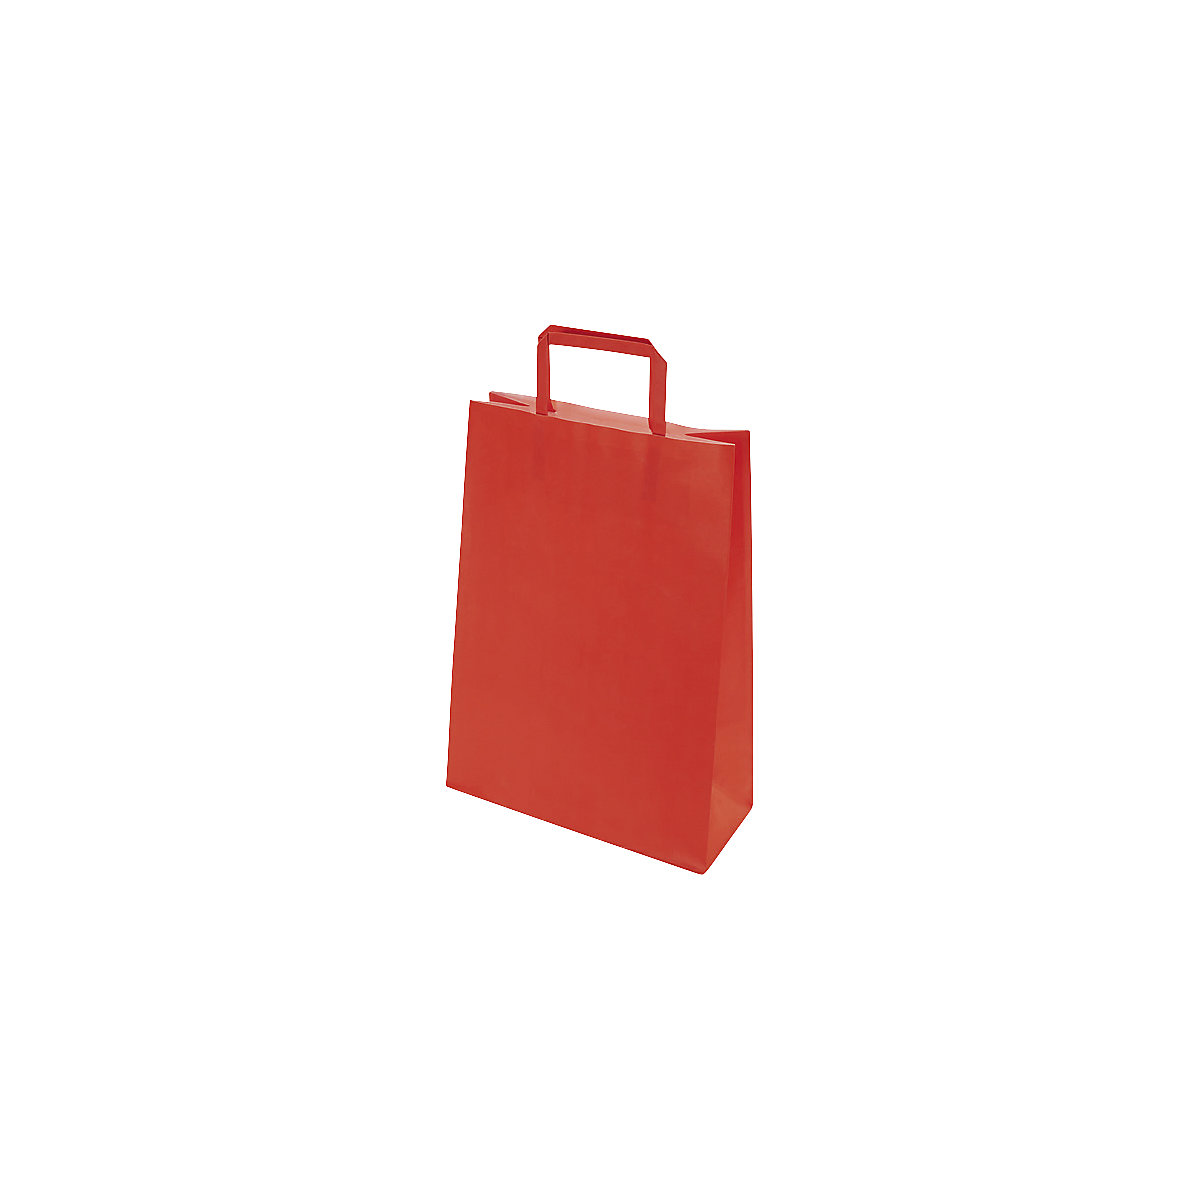 Papiertragetasche BASIC, Außen-LxB 320 x 100 mm, VE 250 Stk, rot, 100 g/m², ab 10 VE